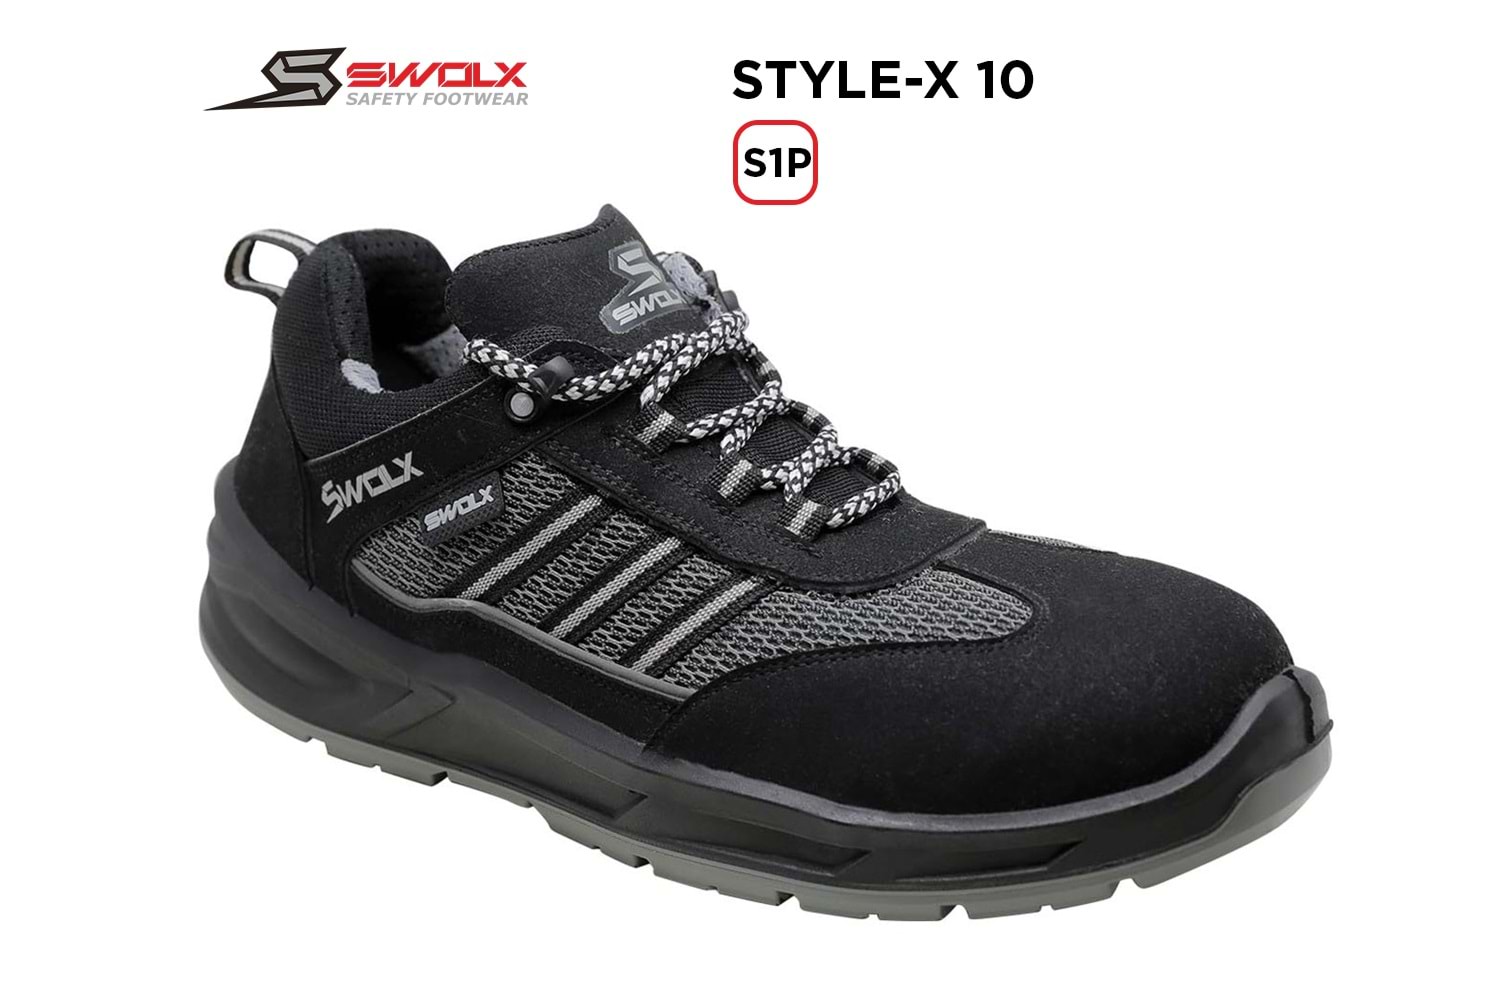 Swolx İş Ayakkabısı - Style-X 10 S1P - 37